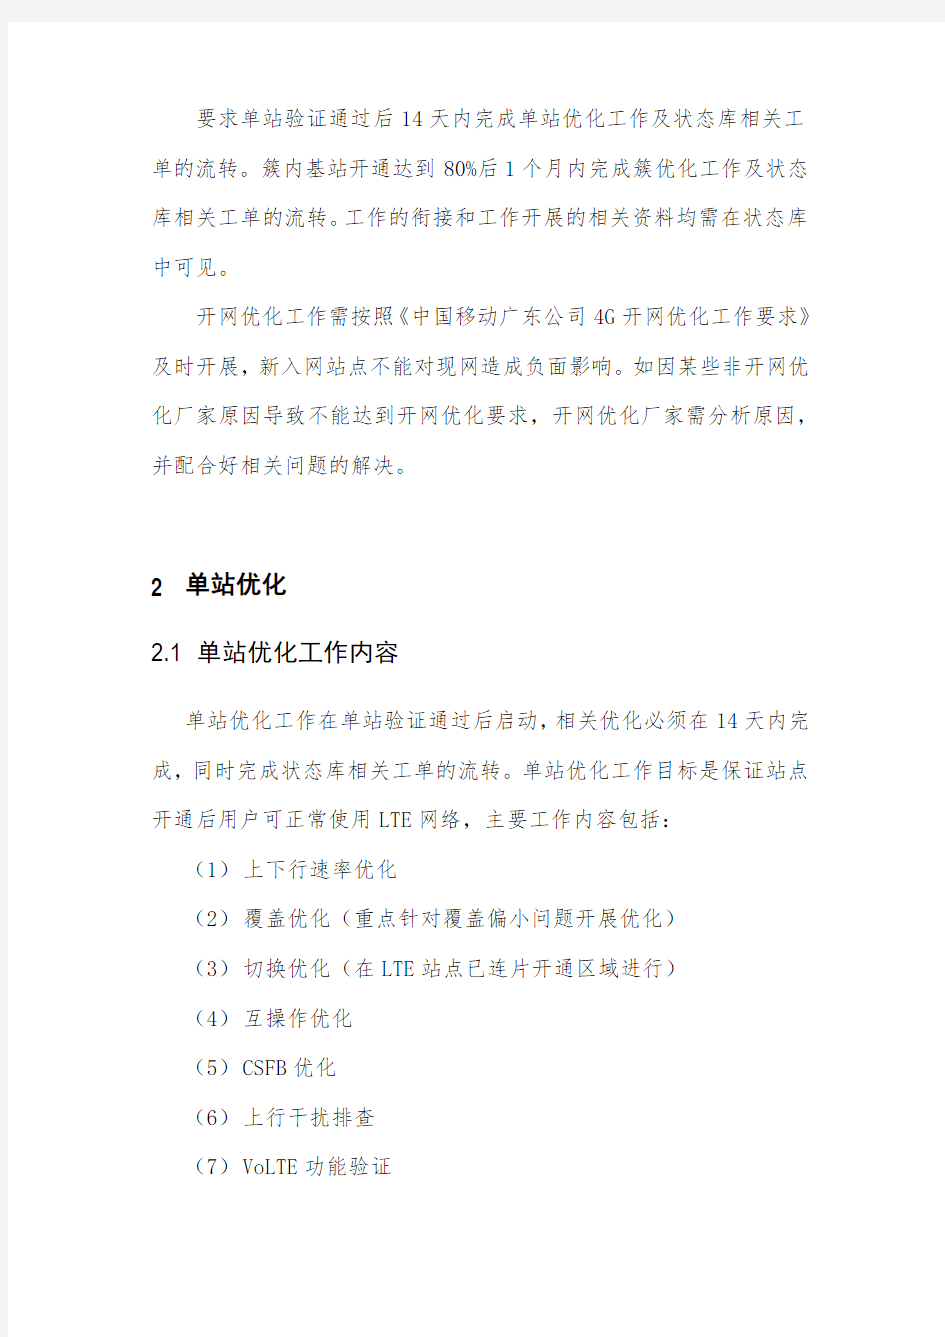 中国移动广东公司4G开网优化工作要求V2.0